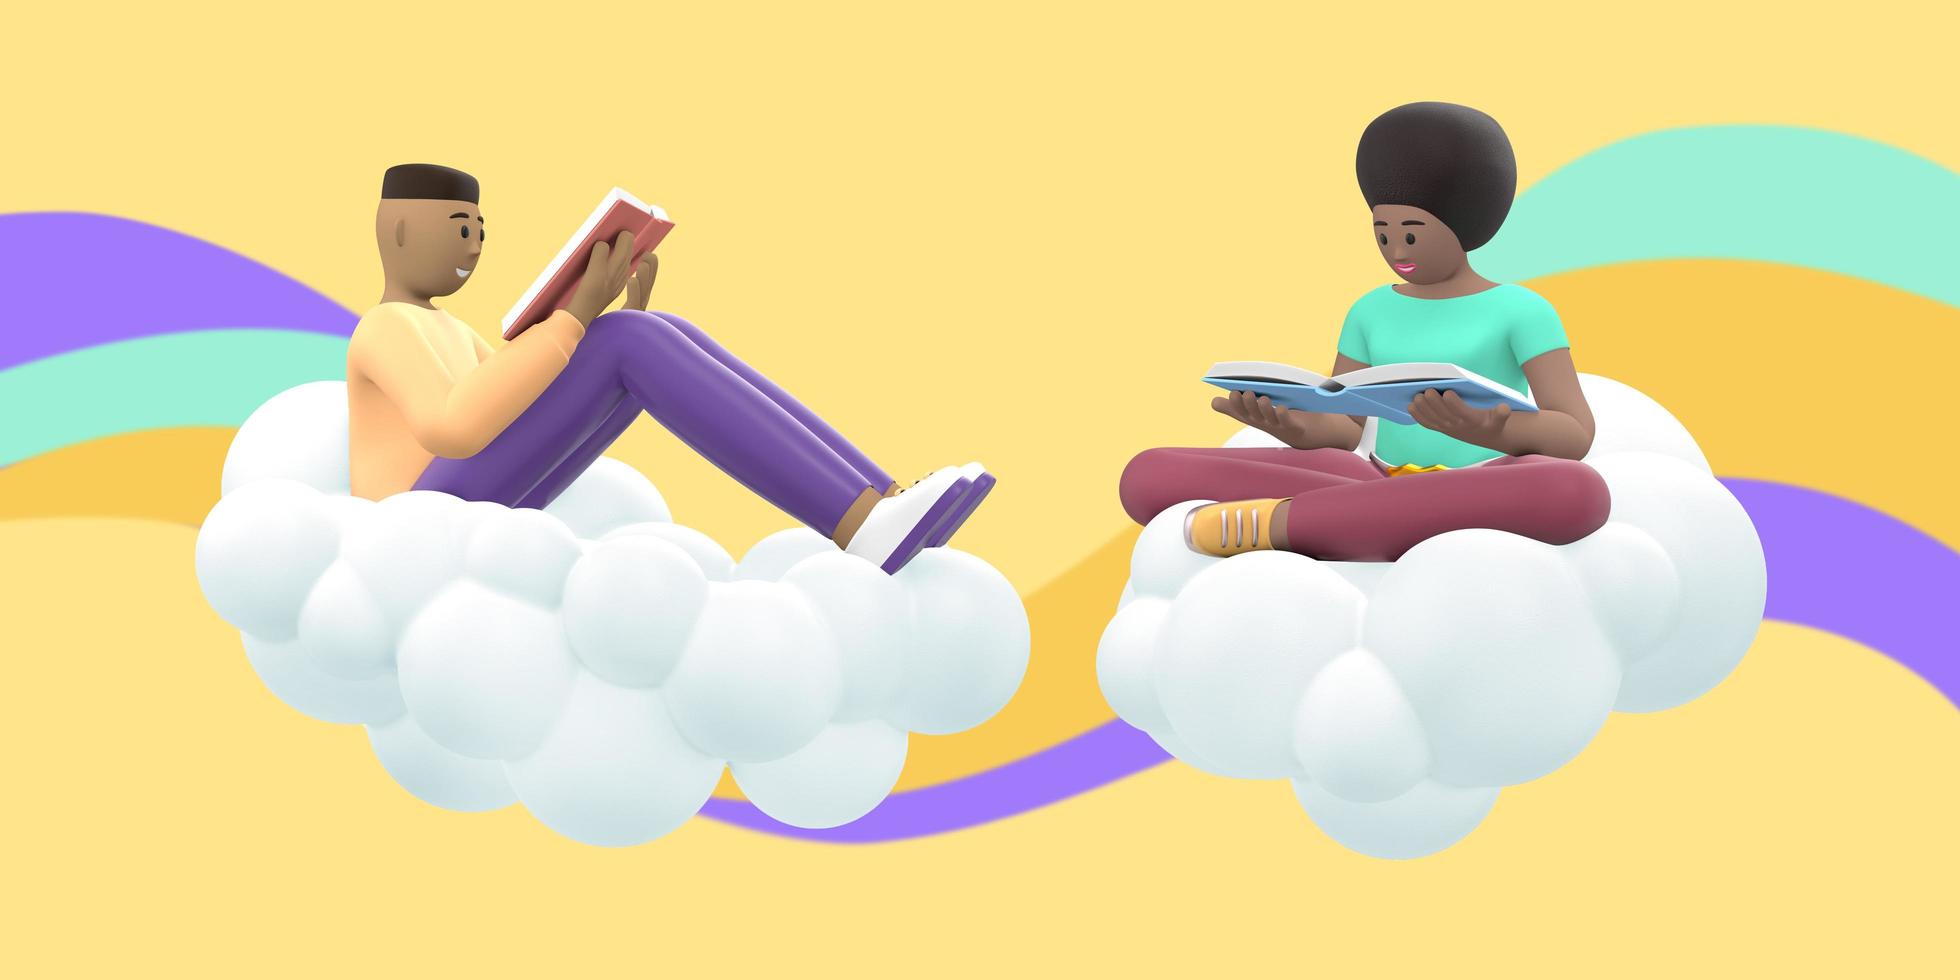 fanático de la literatura, un joven y una niña africana en el cielo en una nube están leyendo un libro. gente de dibujos animados divertidos y abstractos sobre un fondo amarillo con ondas de colores. representación 3d foto